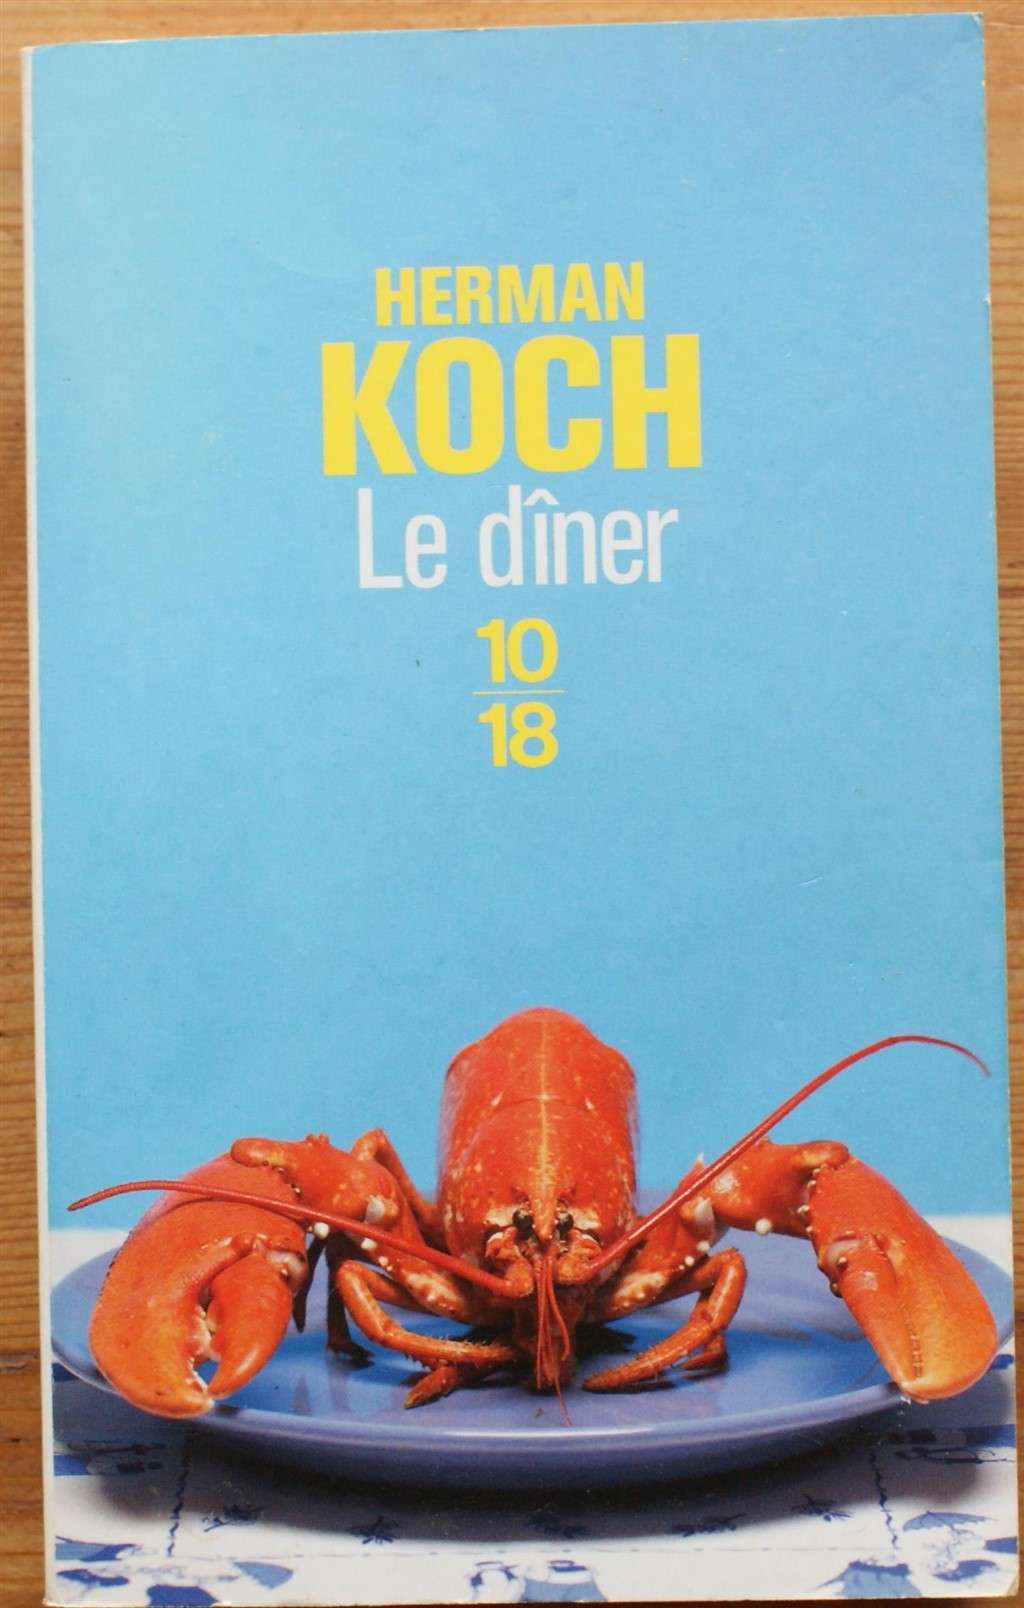 Le dîner - Herman Koch